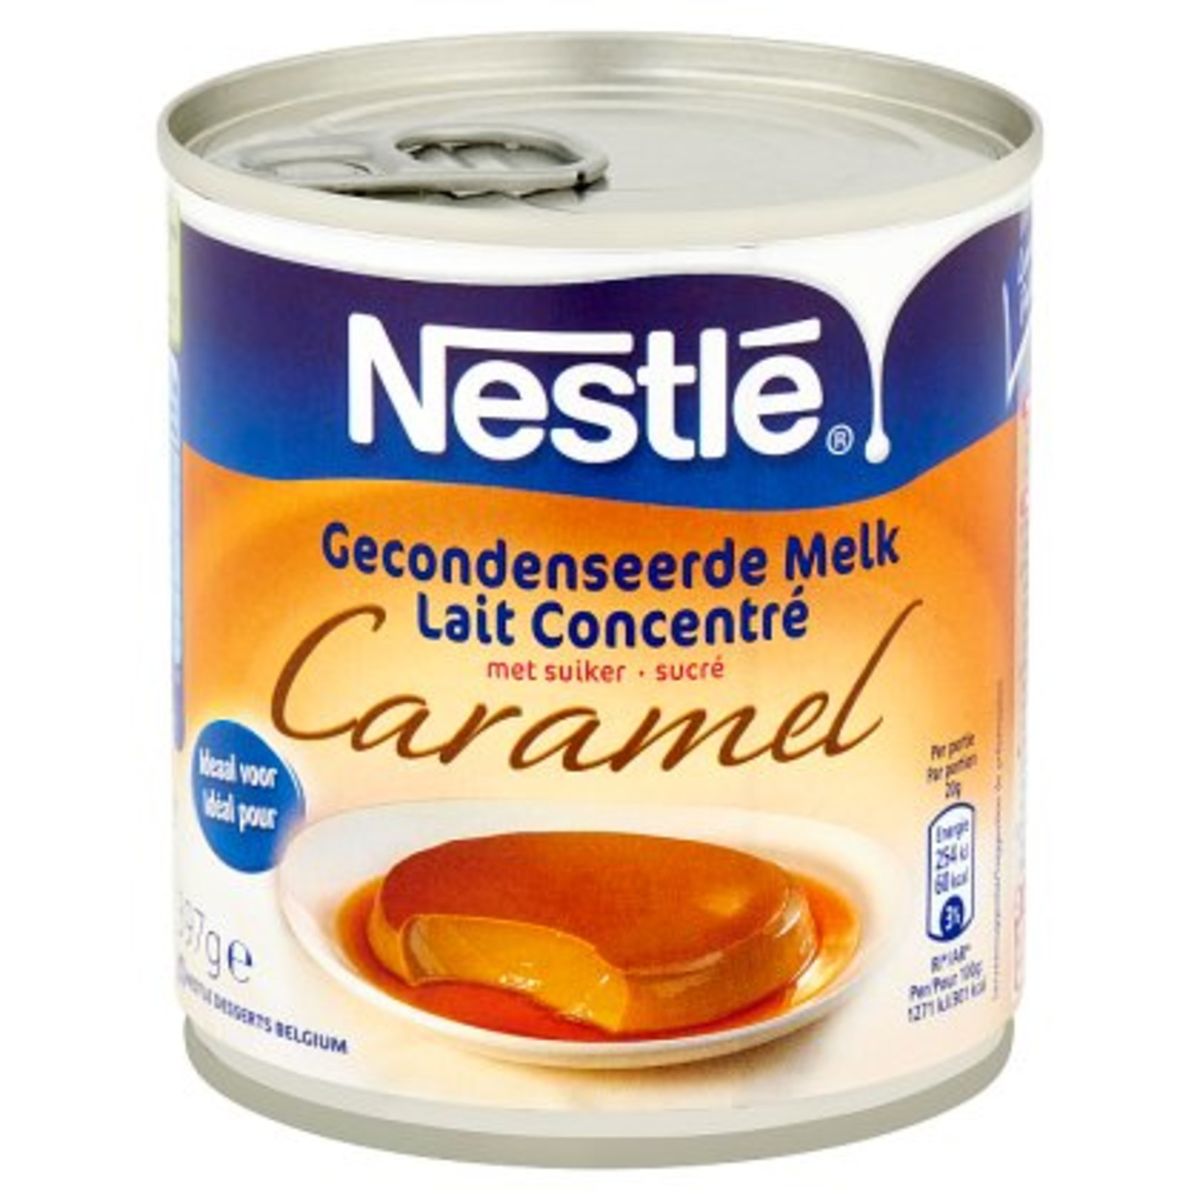 NESTLÉ Gecondenseerde Melk met Suiker Caramel 397 g